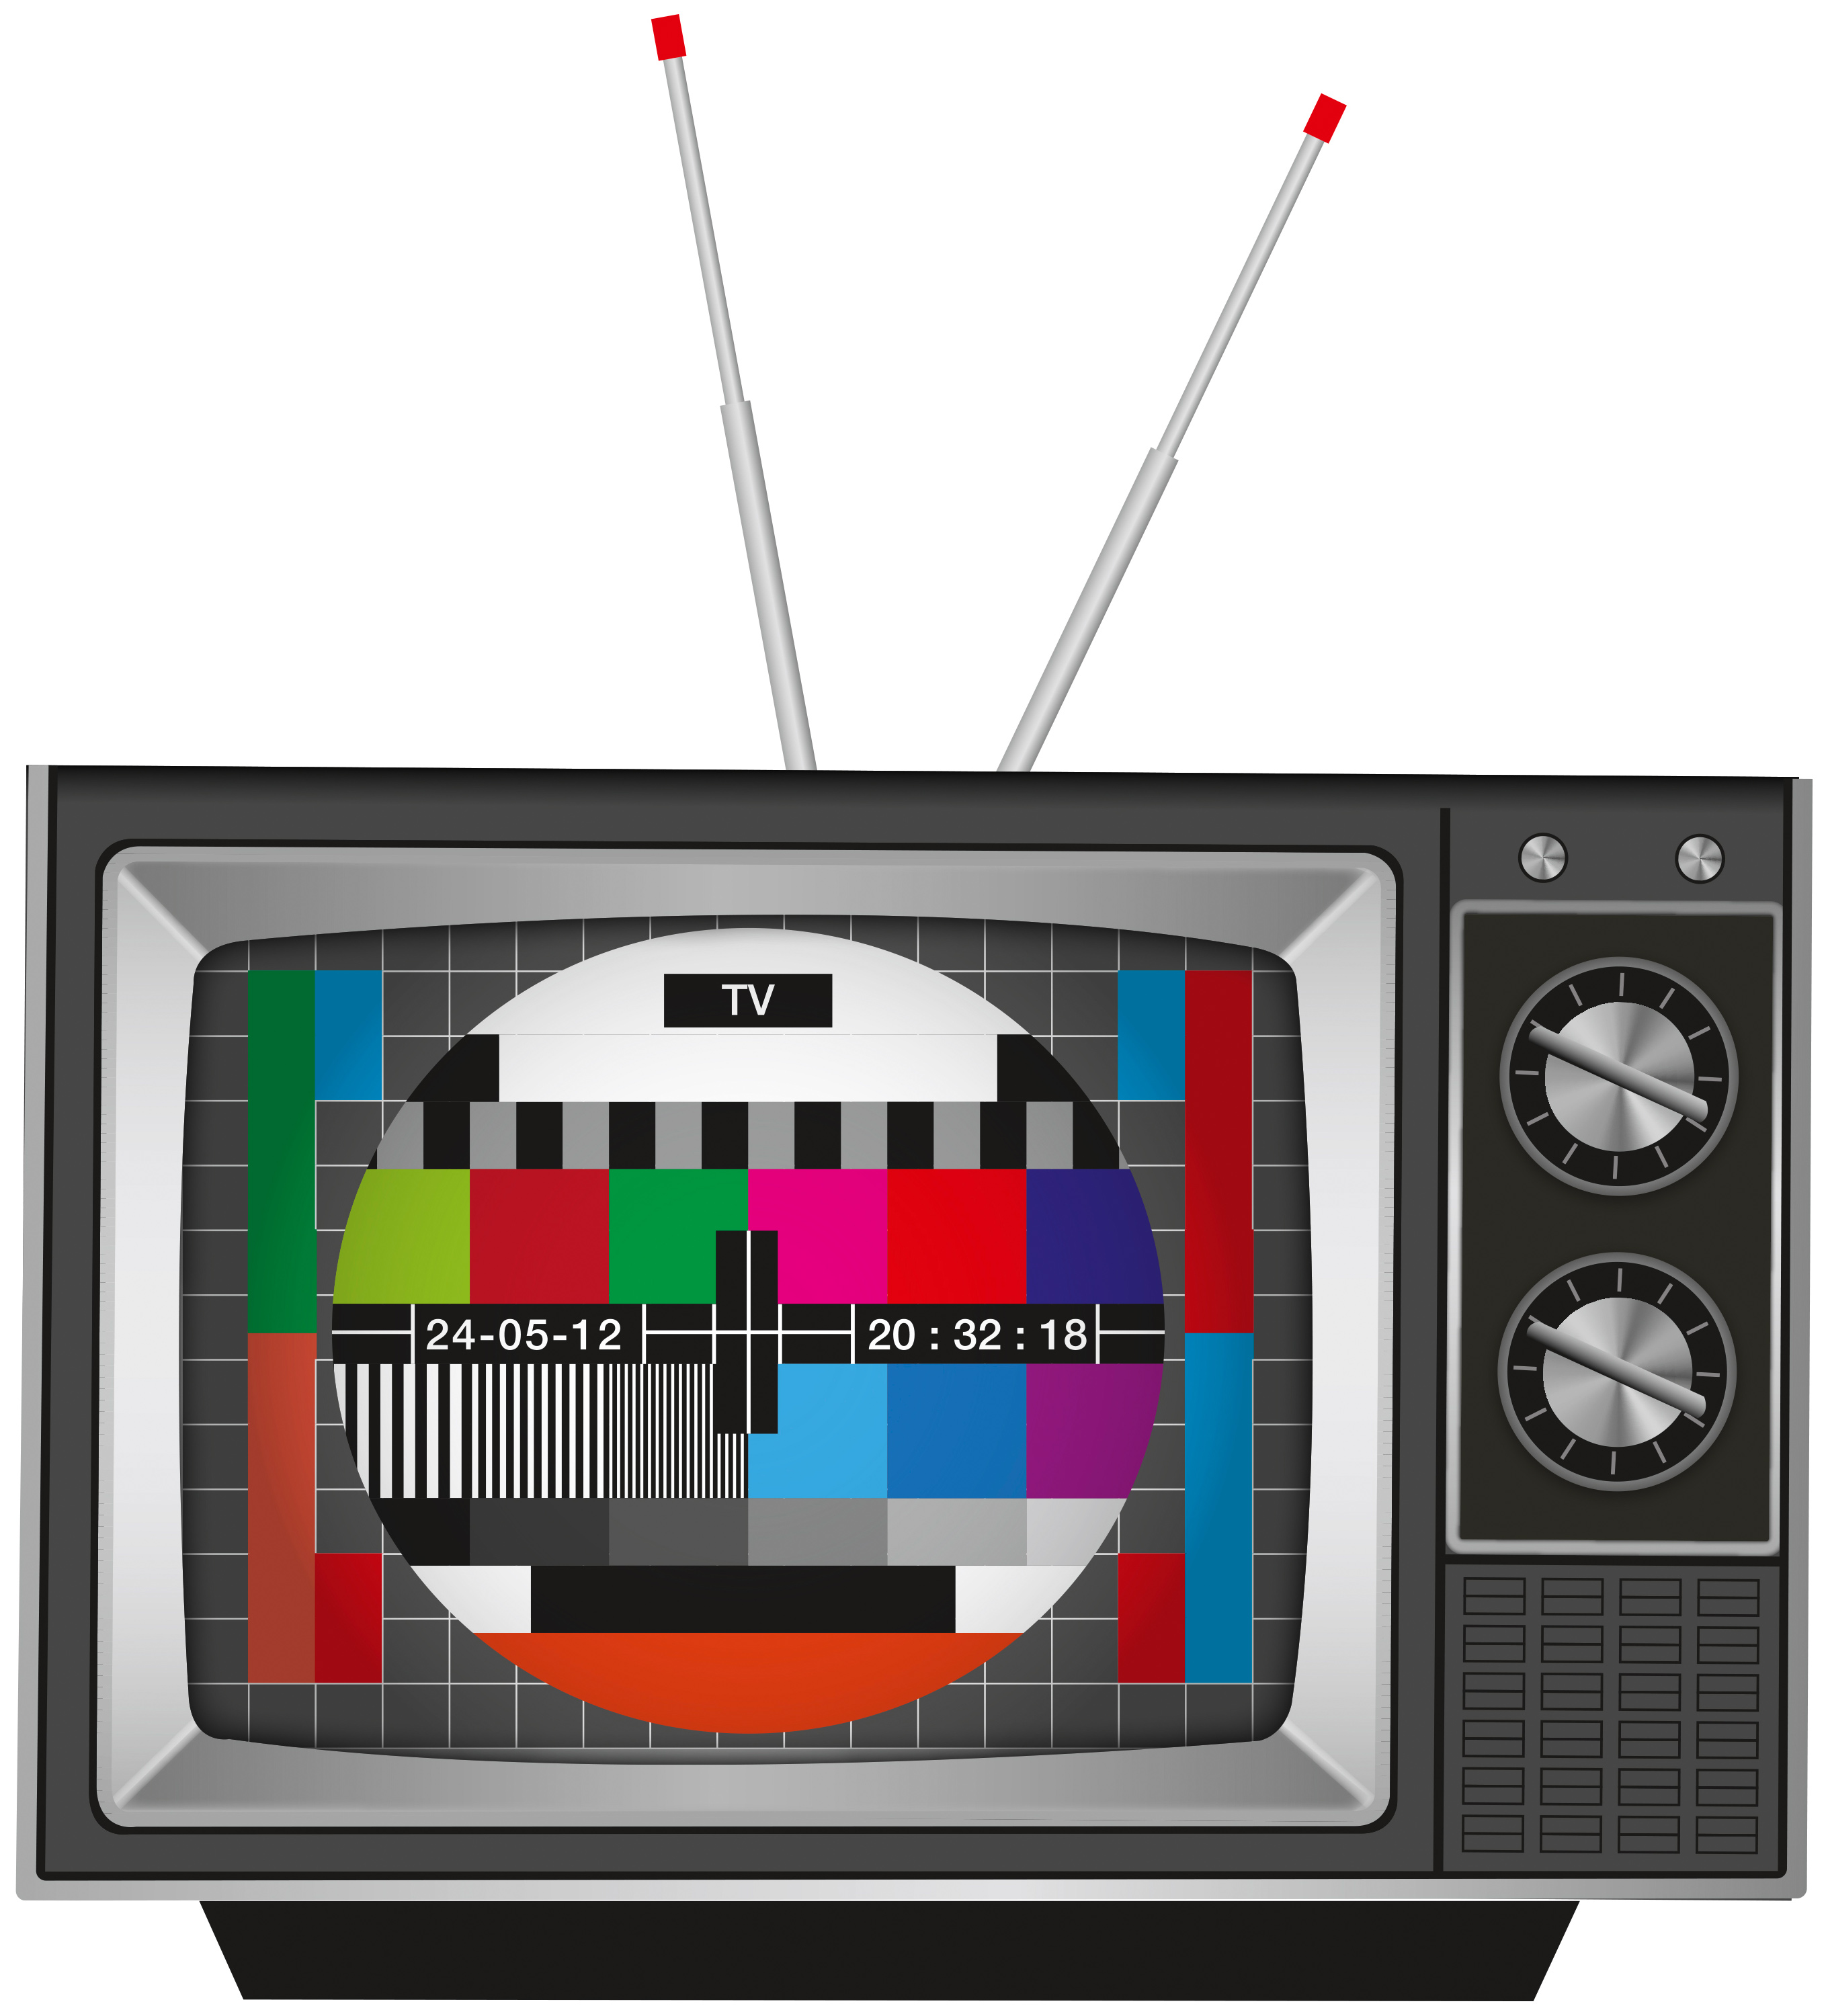 télé - Changements de fréquences de la TNT du 25 au 27 septembre 2018